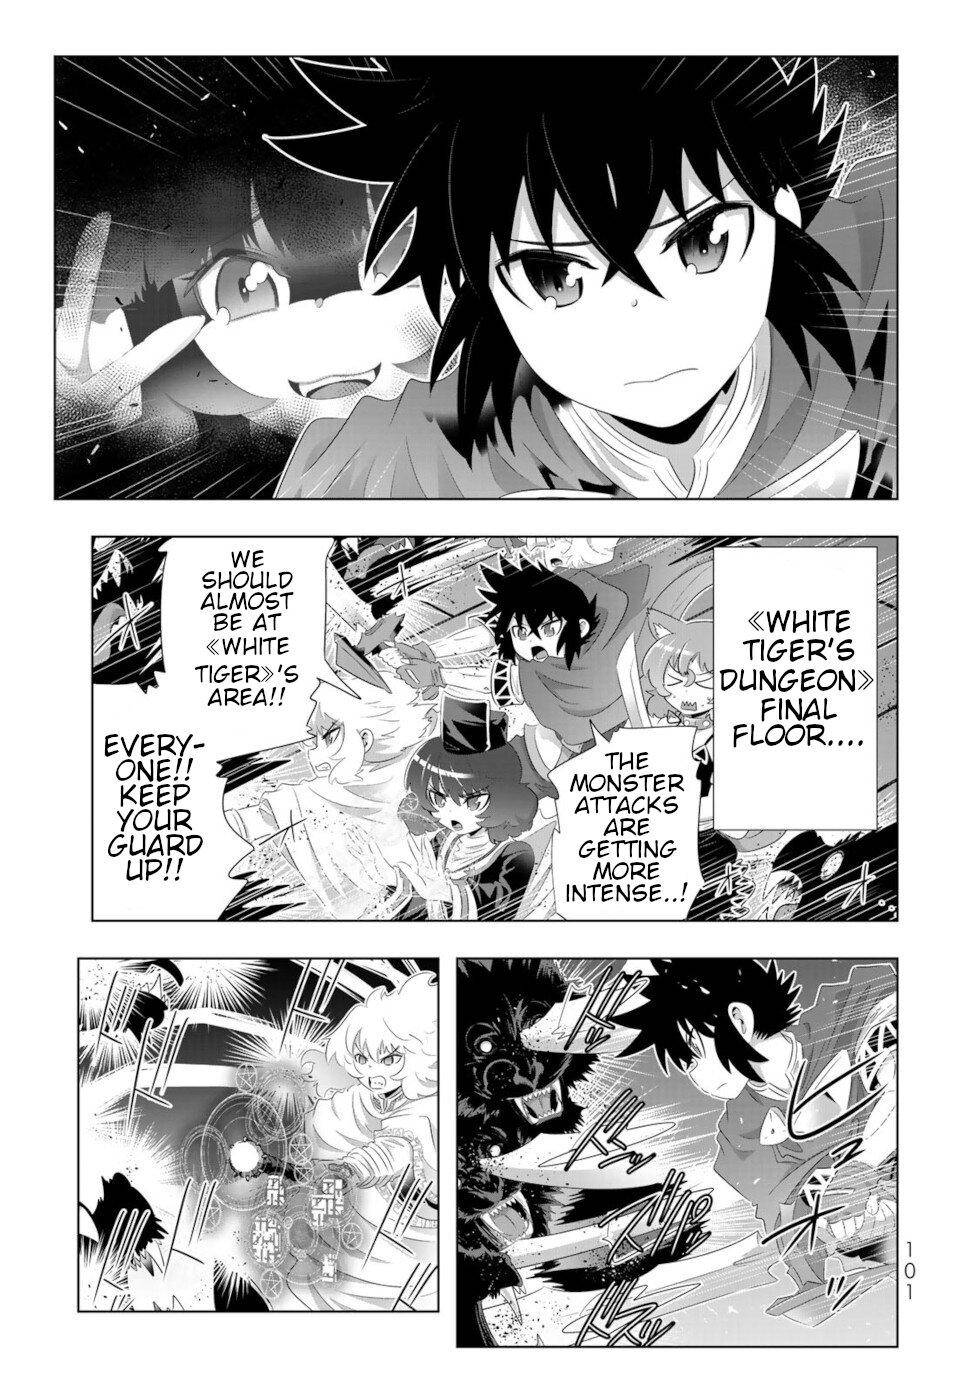 10 Manga Like Isekai Shihai no Skill Taker: Zero kara Hajimeru Dorei Harem